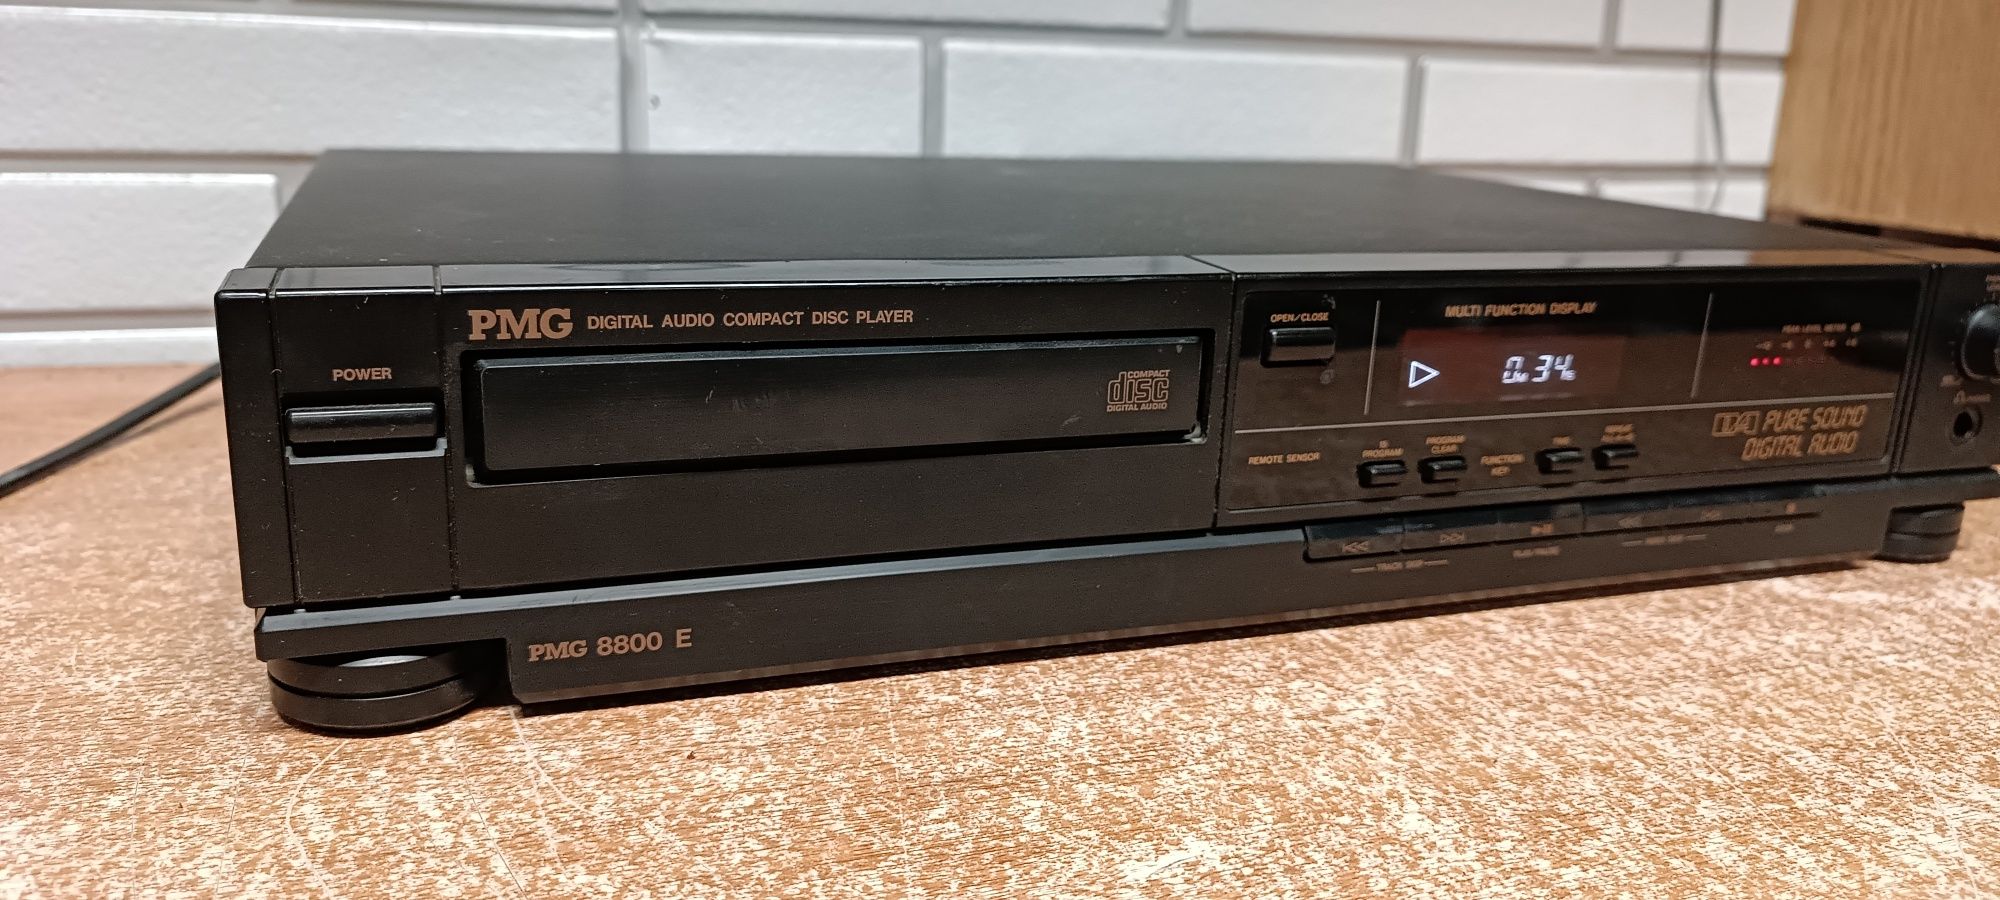 Odtwarzacz płyt cd PMG 8800E. Japan